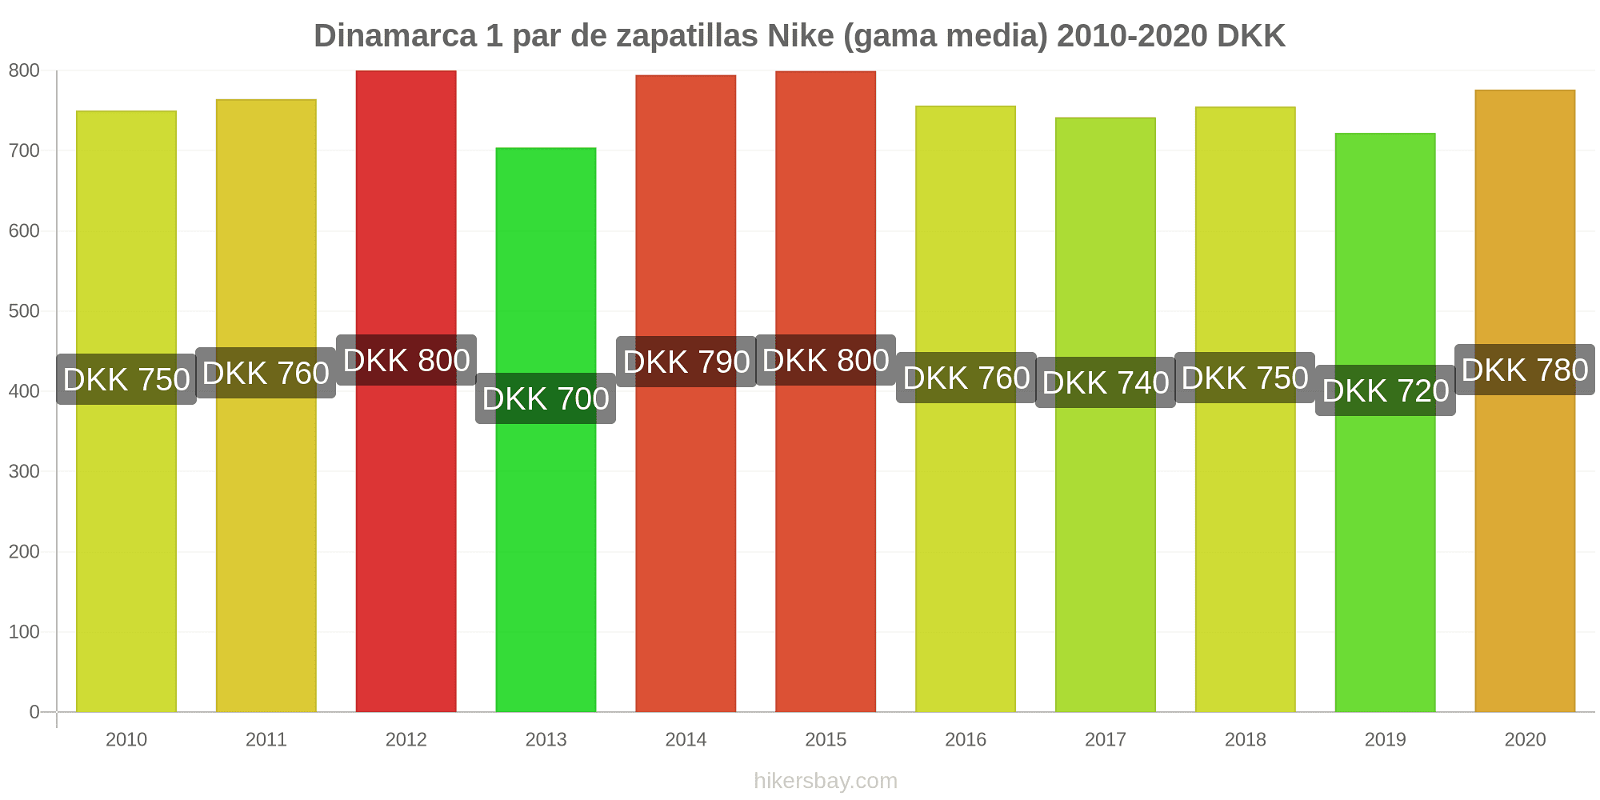 Dinamarca cambios de precios 1 par de zapatillas Nike (gama media) hikersbay.com